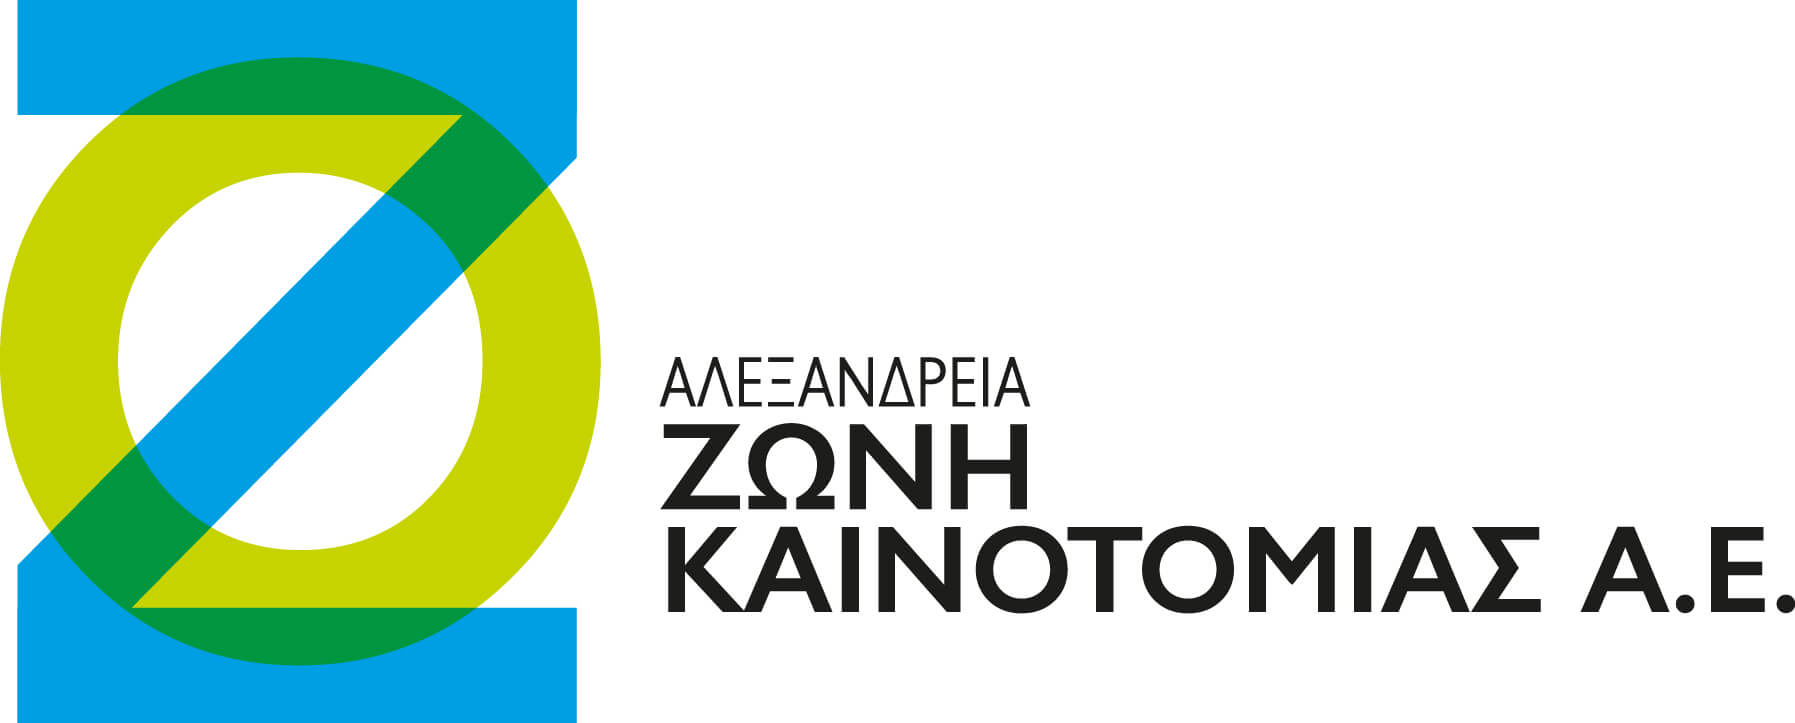 «Στη Θεσσαλονίκη το Κέντρο Ψηφιακής Καινοτομίας Αγροδιατροφής με πρωτοβουλία της Αλεξάνδρειας Ζώνης Καινοτομίας»